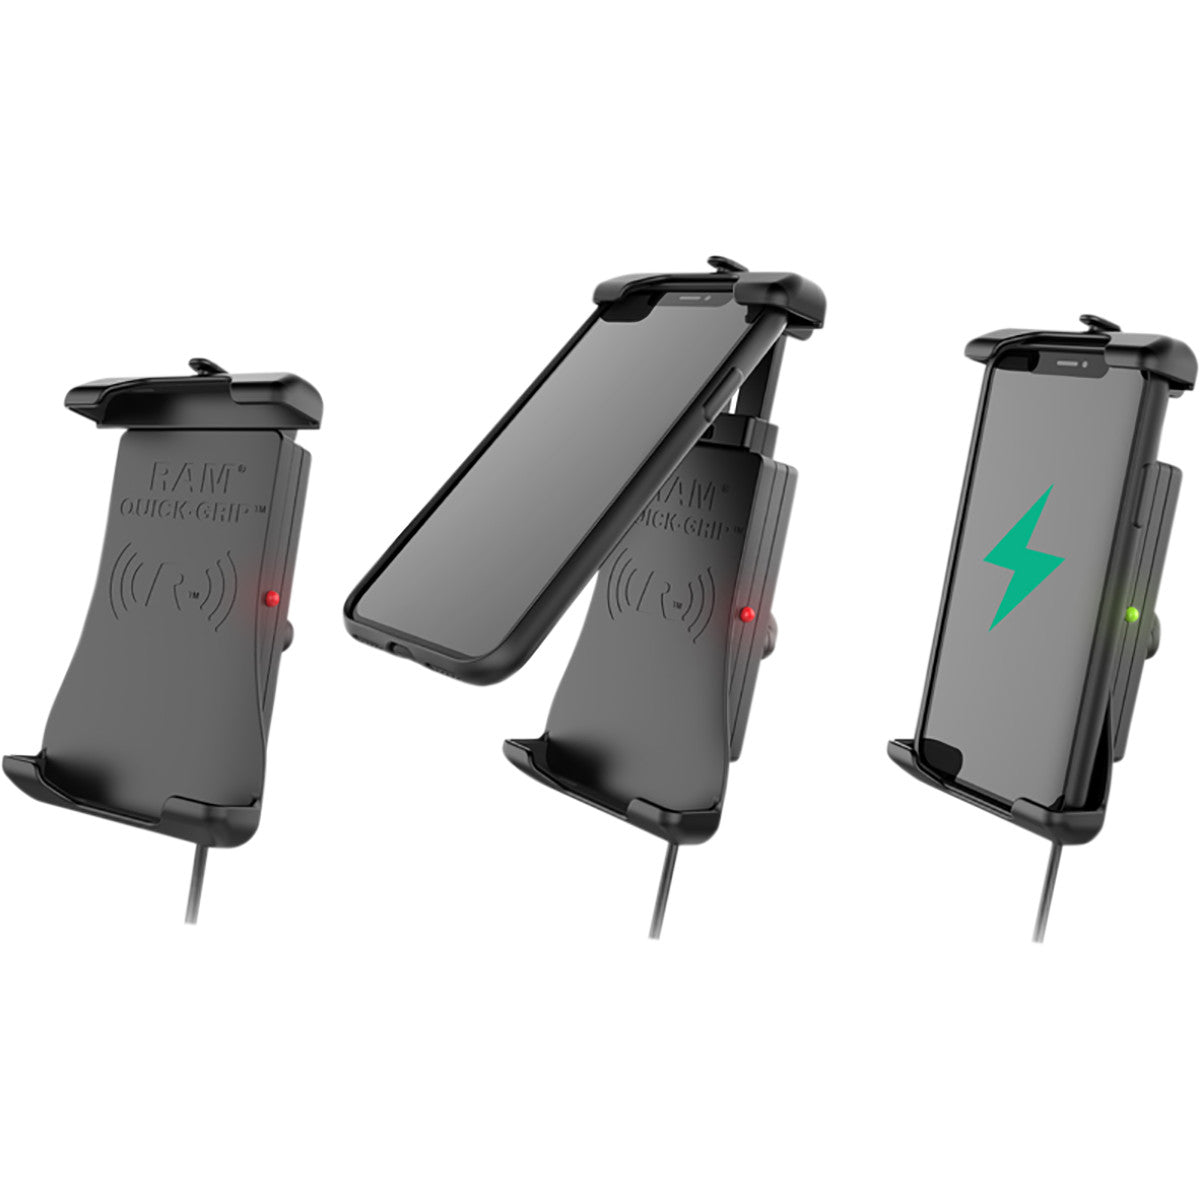 Ram Quick-Grip™ supports de recharge sans fil étanches